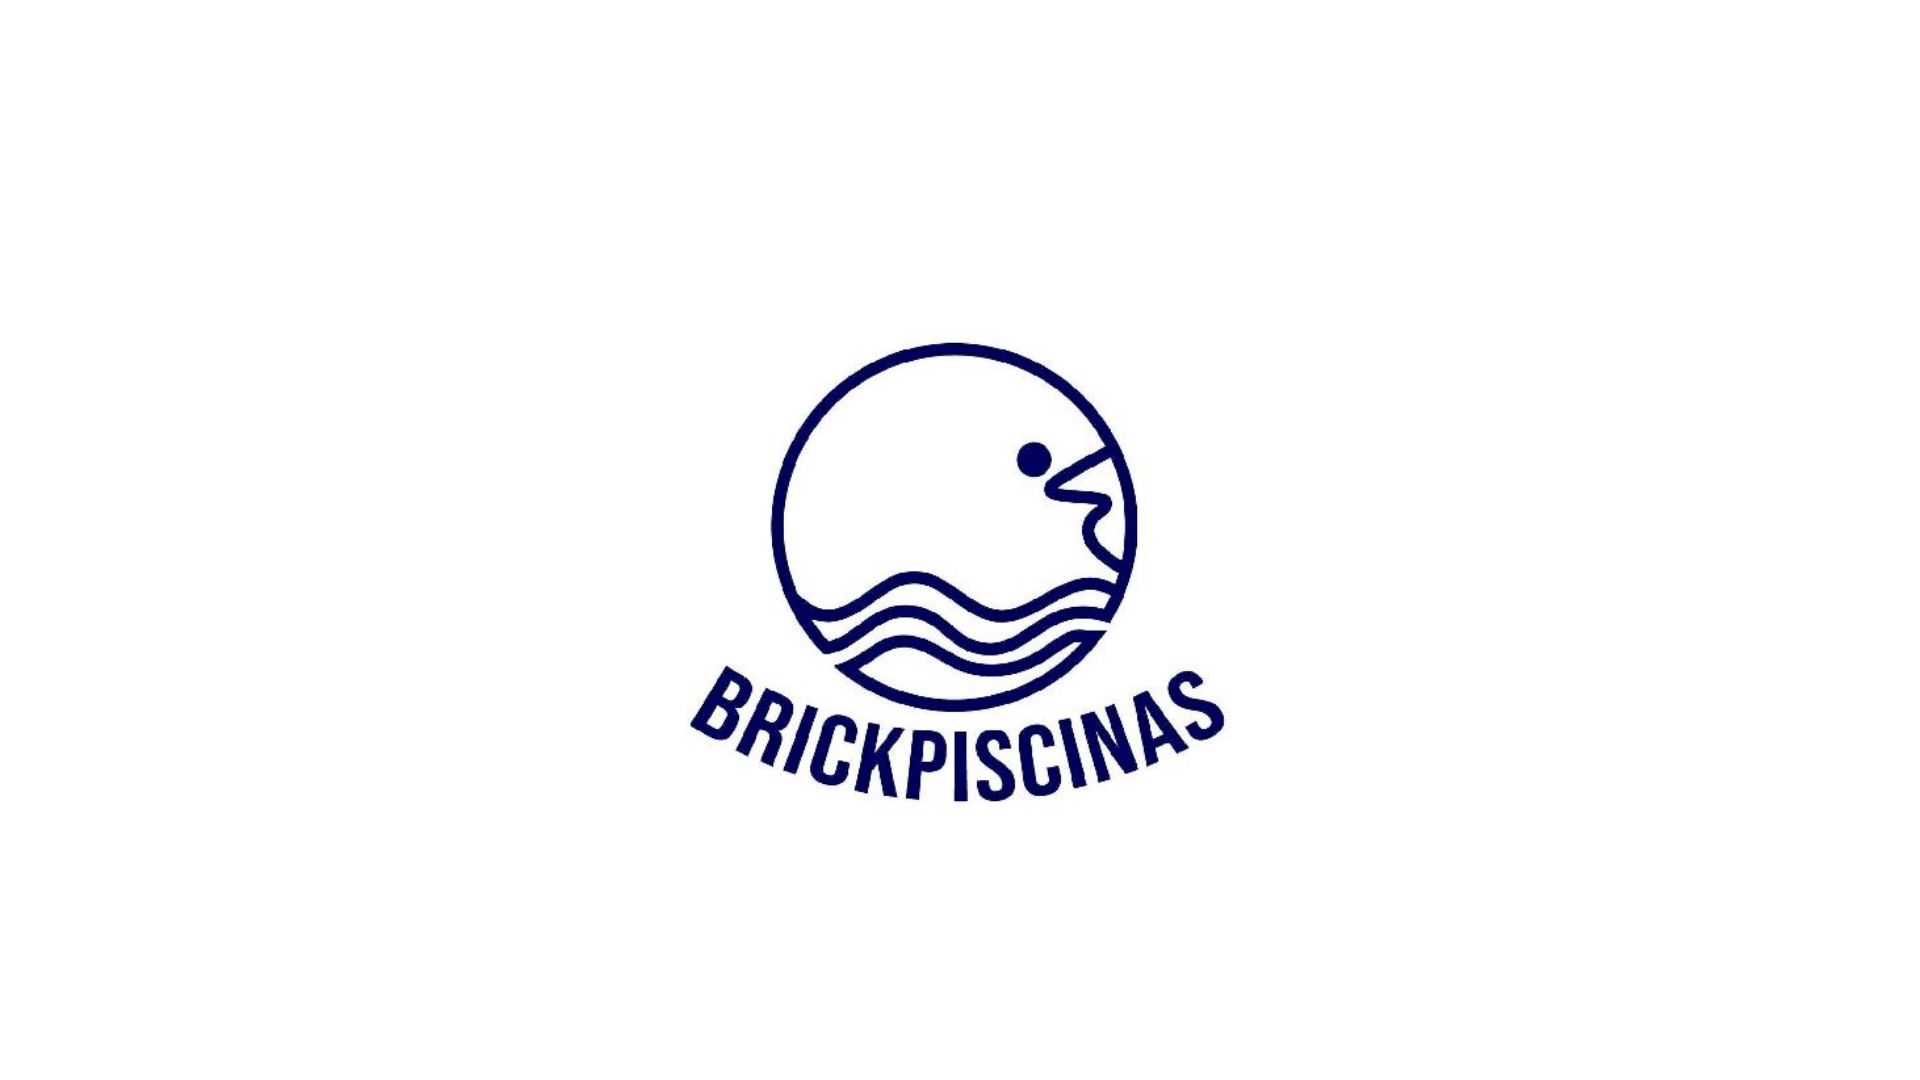 BRICKPISCINAS SL Registra Marca para Servicios de Piscinas en Córdoba